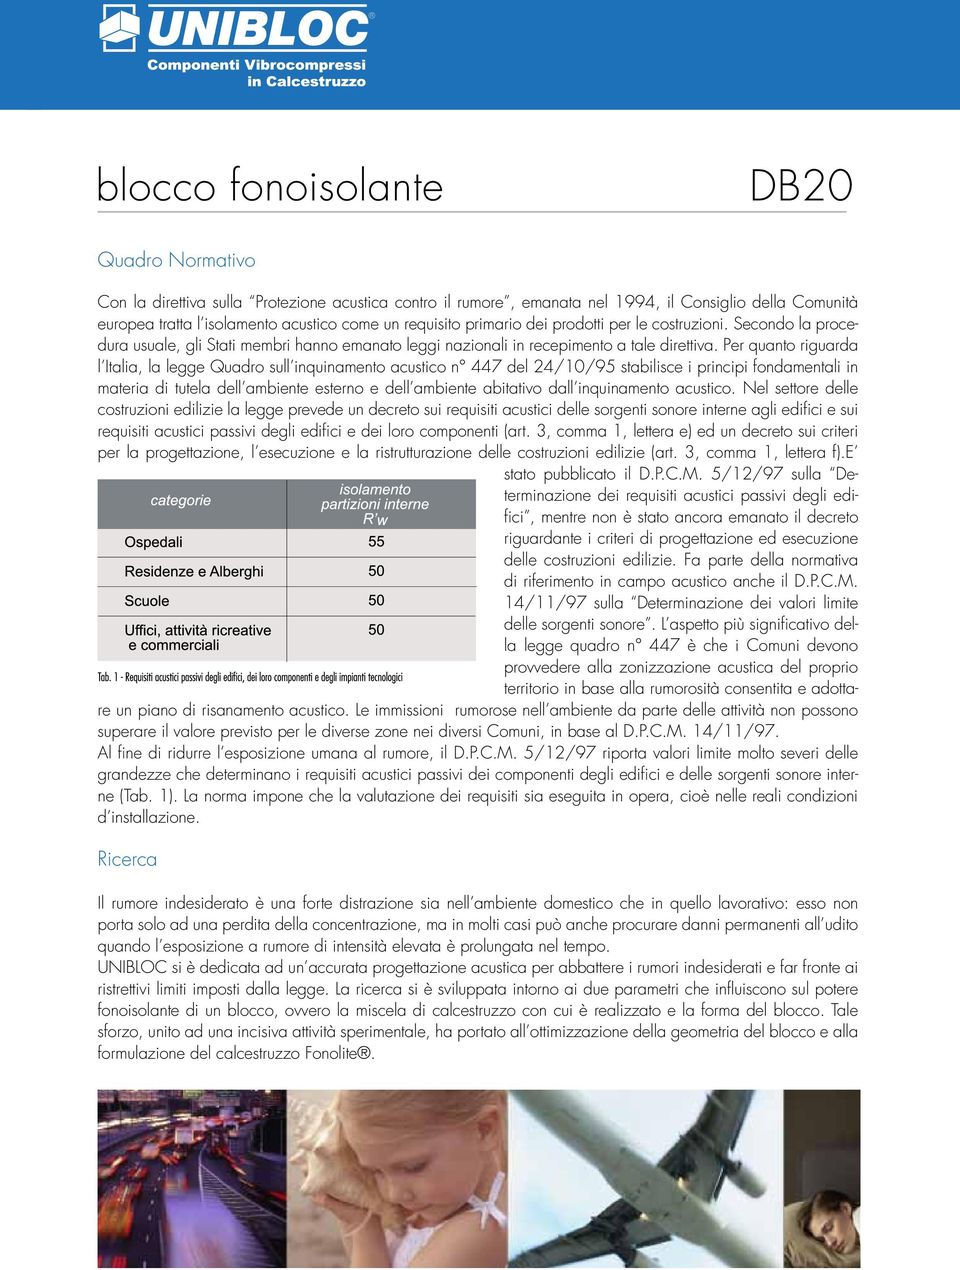 Per quanto riguarda l Italia, la legge Quadro sull inquinamento acustico n 447 del 24/10/95 stabilisce i principi fondamentali in materia di tutela dell ambiente esterno e dell ambiente abitativo